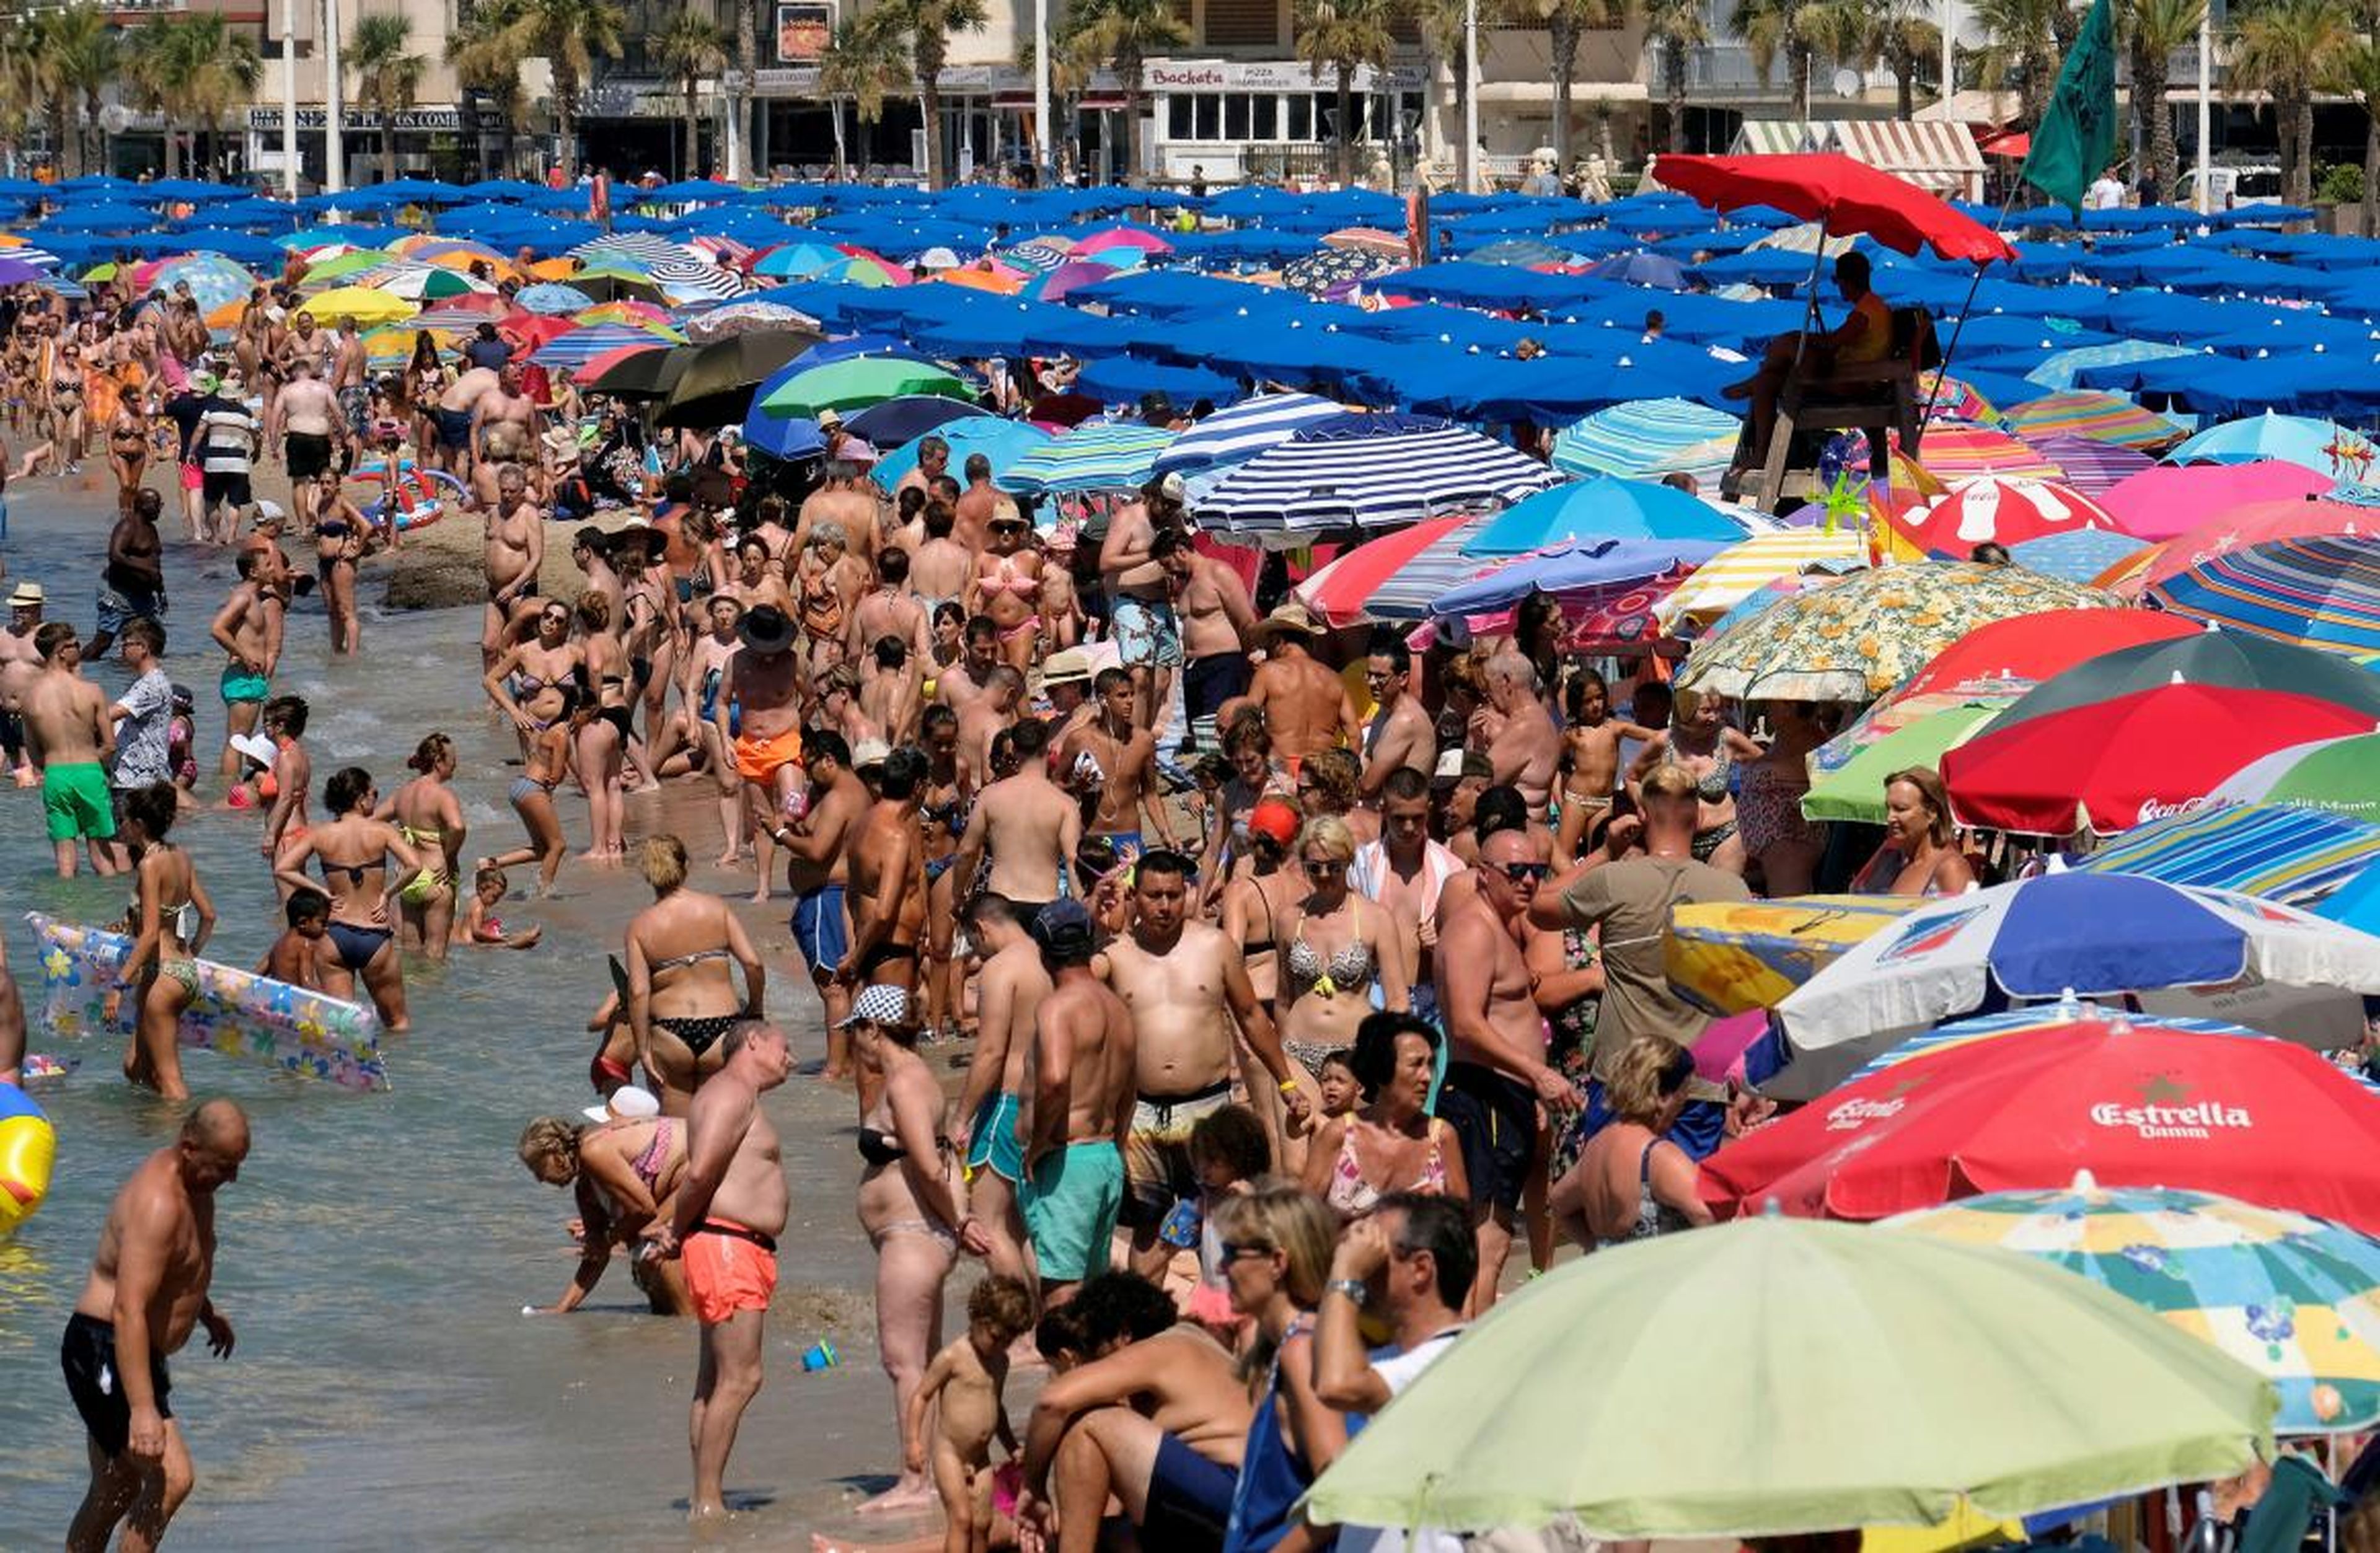 Las playas llenas de gente en España son algo común.